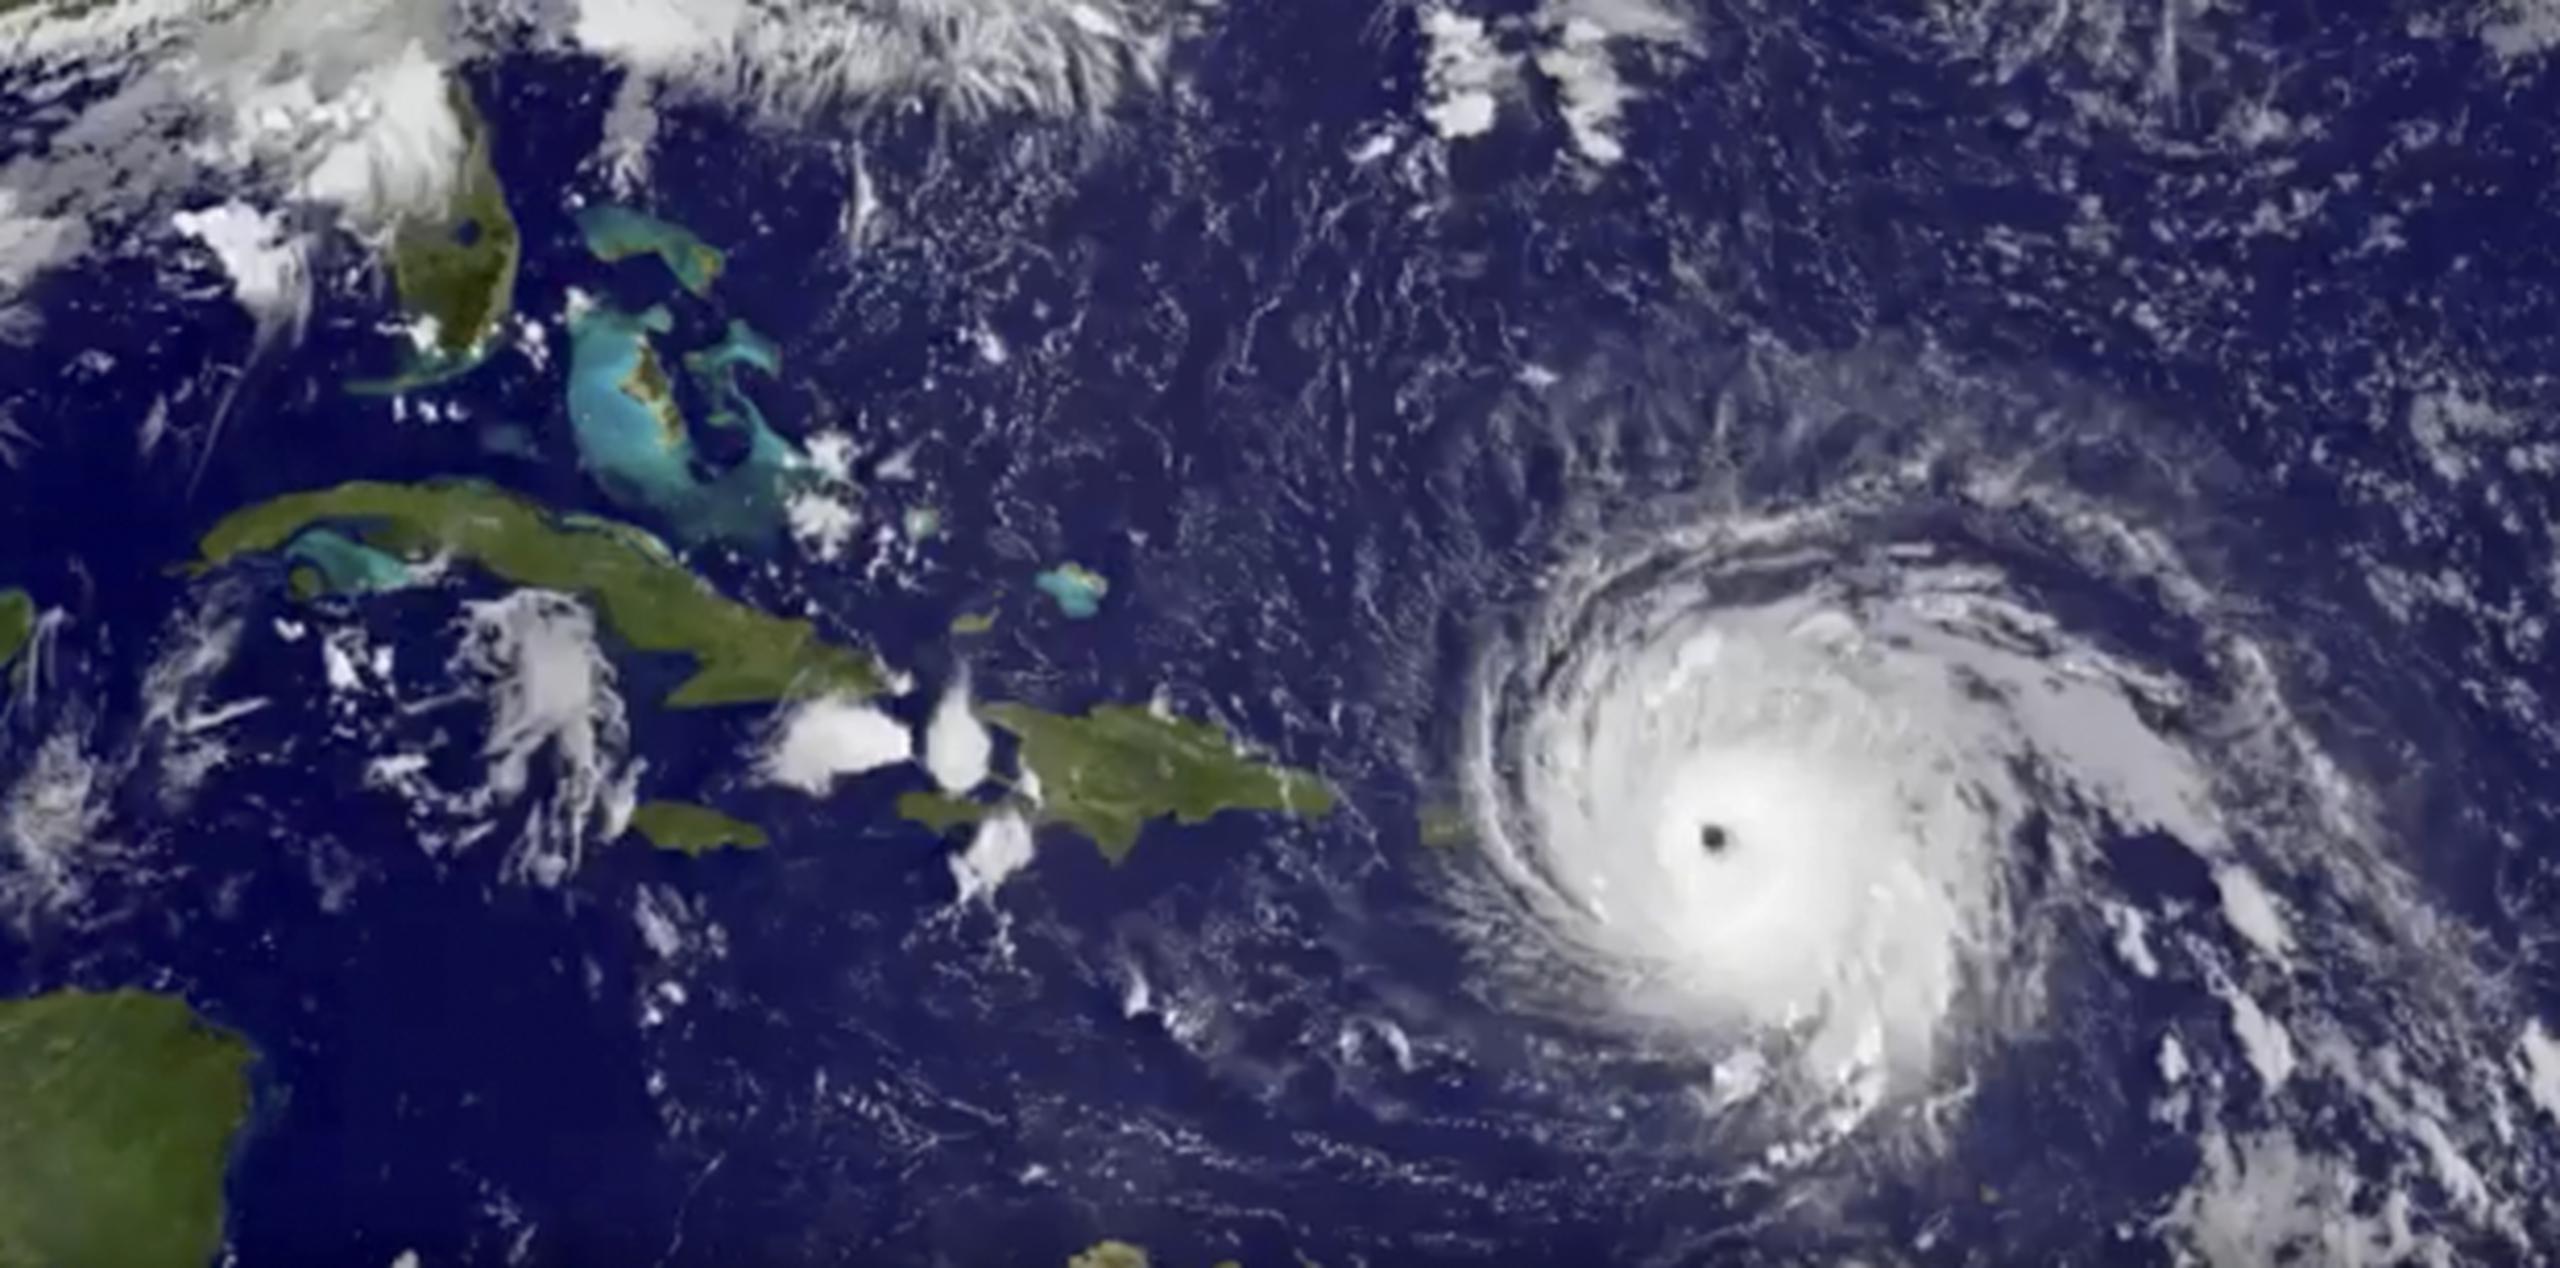 El huracán Irma, de categoría 5, impactó esta madrugada islas del Caribe como Antigua y Barbuda, donde ha causado millonarios destrozos. (NASA/NOAA GOES Project via AP)
